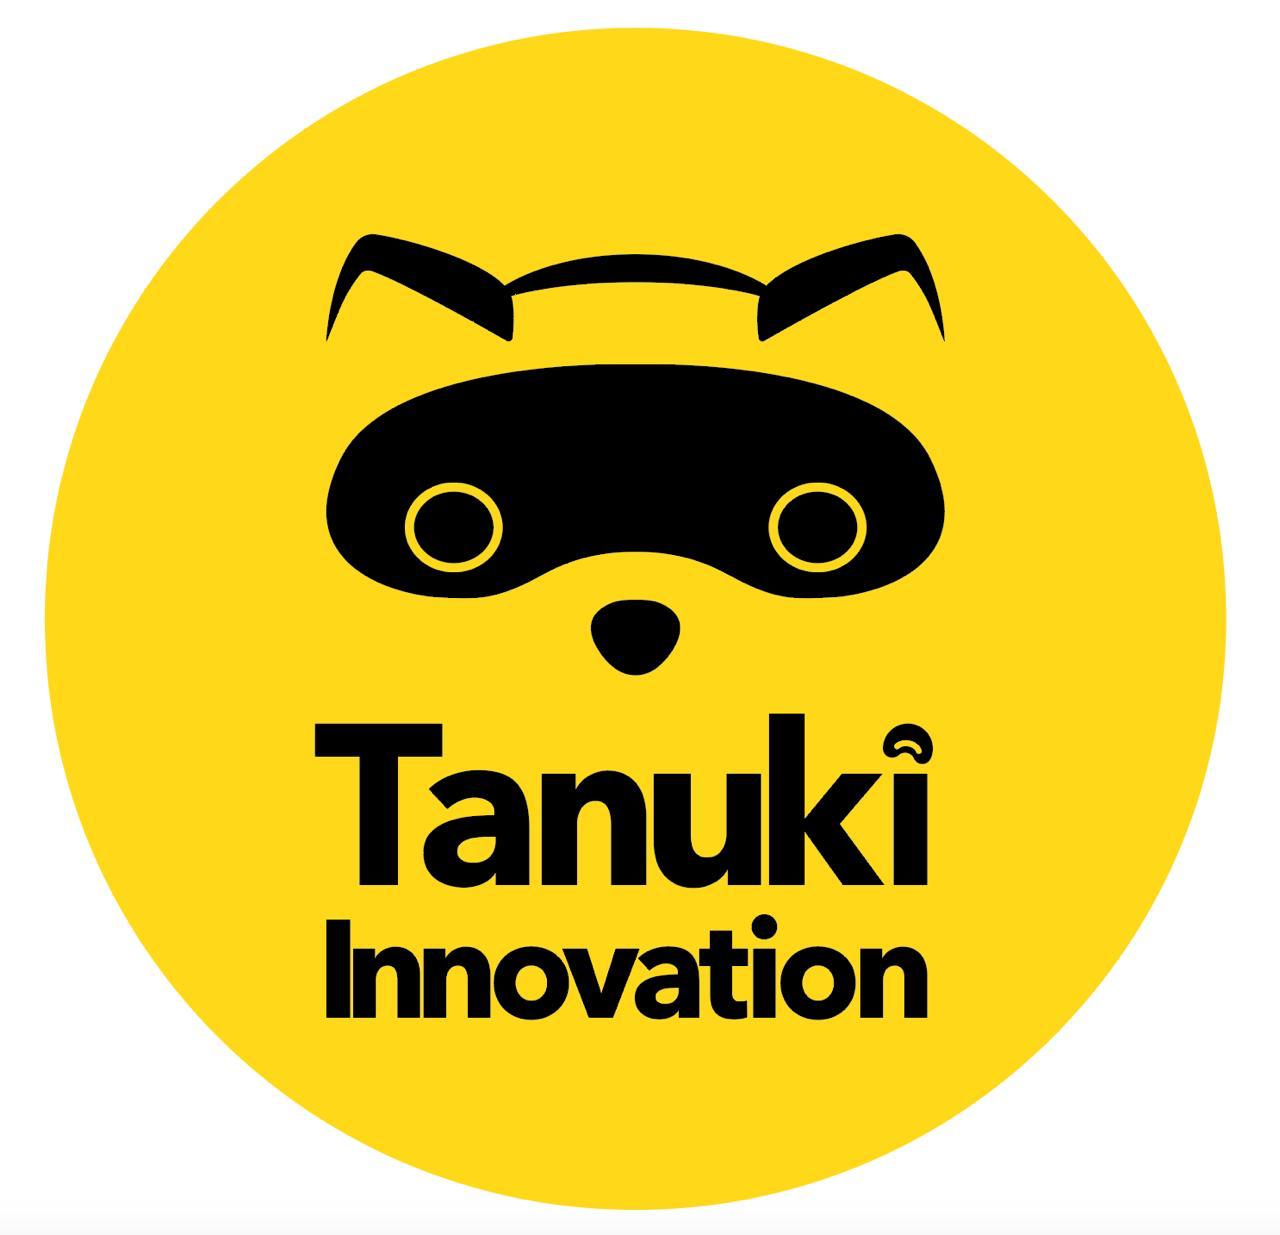 Tanuki Innovation